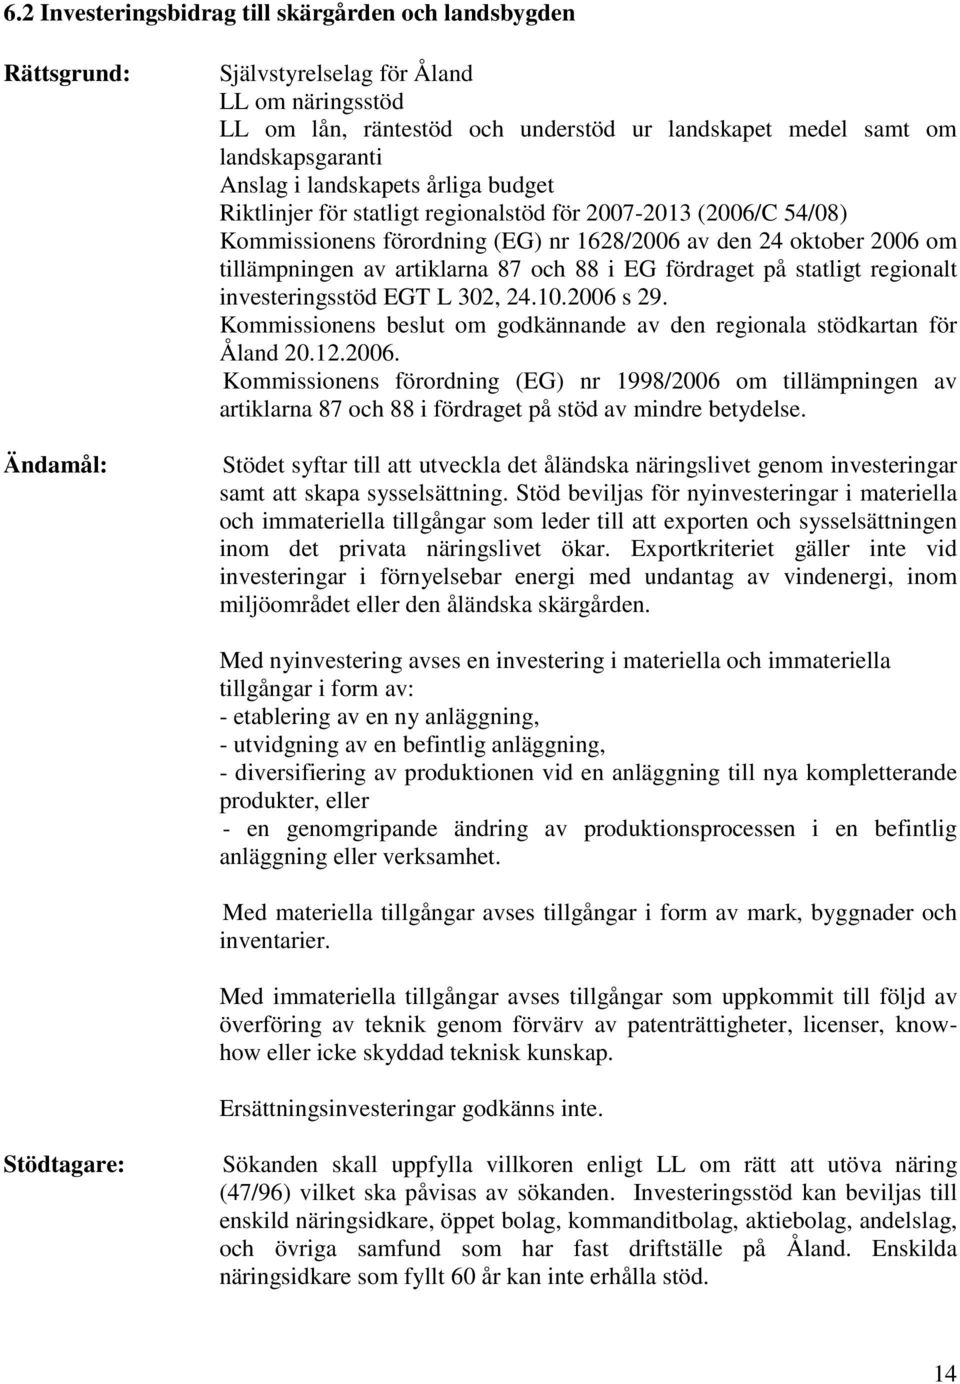 tillämpningen av artiklarna 87 och 88 i EG fördraget på statligt regionalt investeringsstöd EGT L 302, 24.10.2006 s 29. Kommissionens beslut om godkännande av den regionala stödkartan för Åland 20.12.